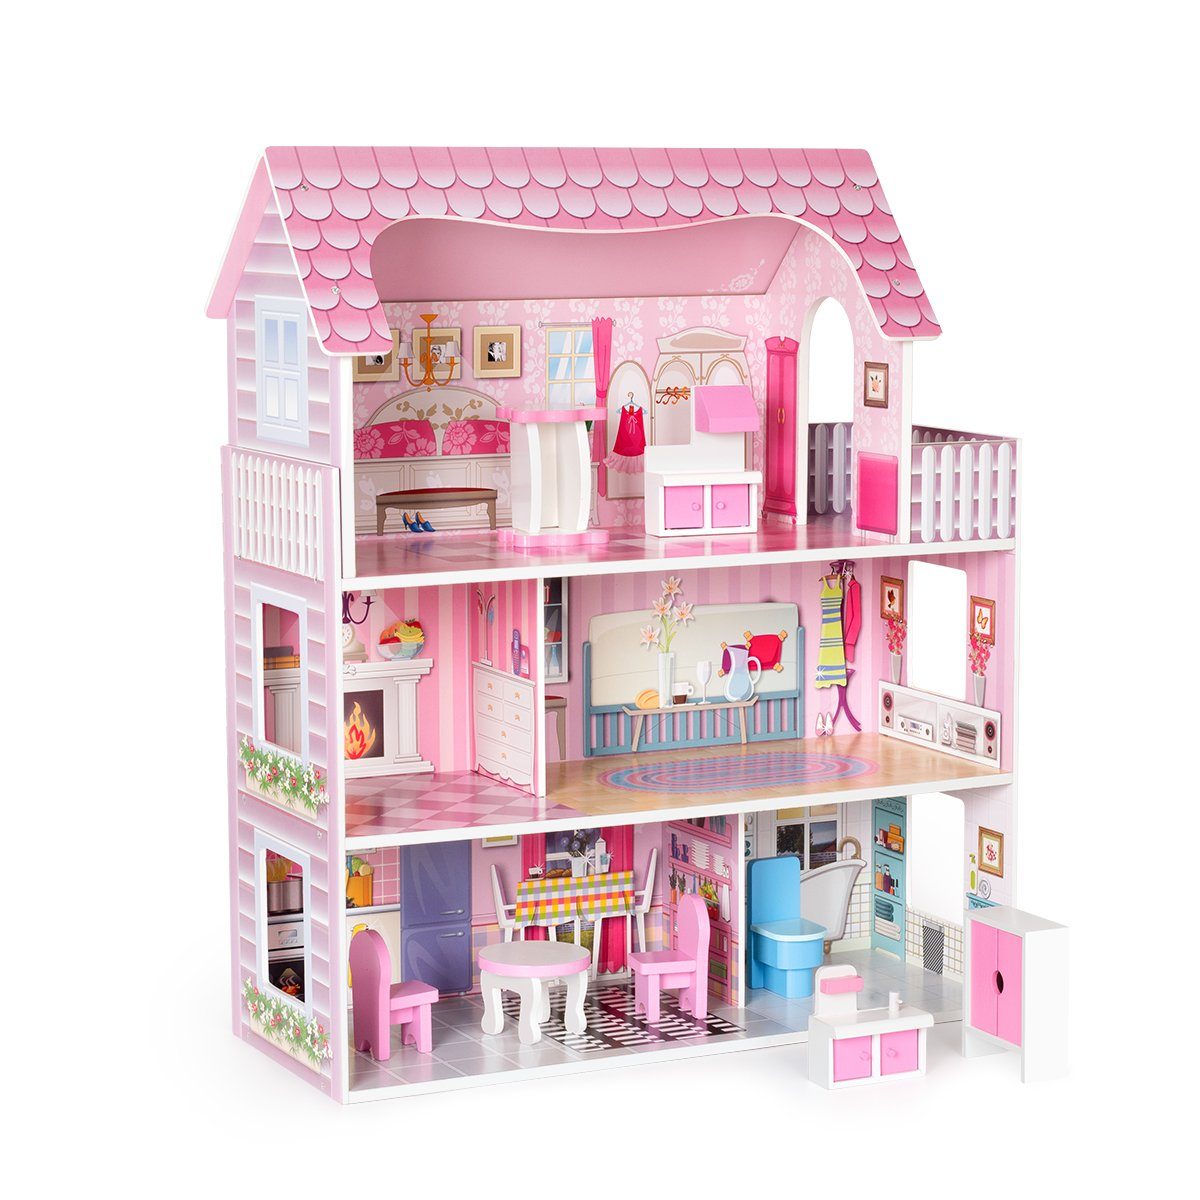 DOTMALL Puppenhaus Rosafarbenes Puppenhaus-Spielset aus Holz mit Möbeln und Zubehör